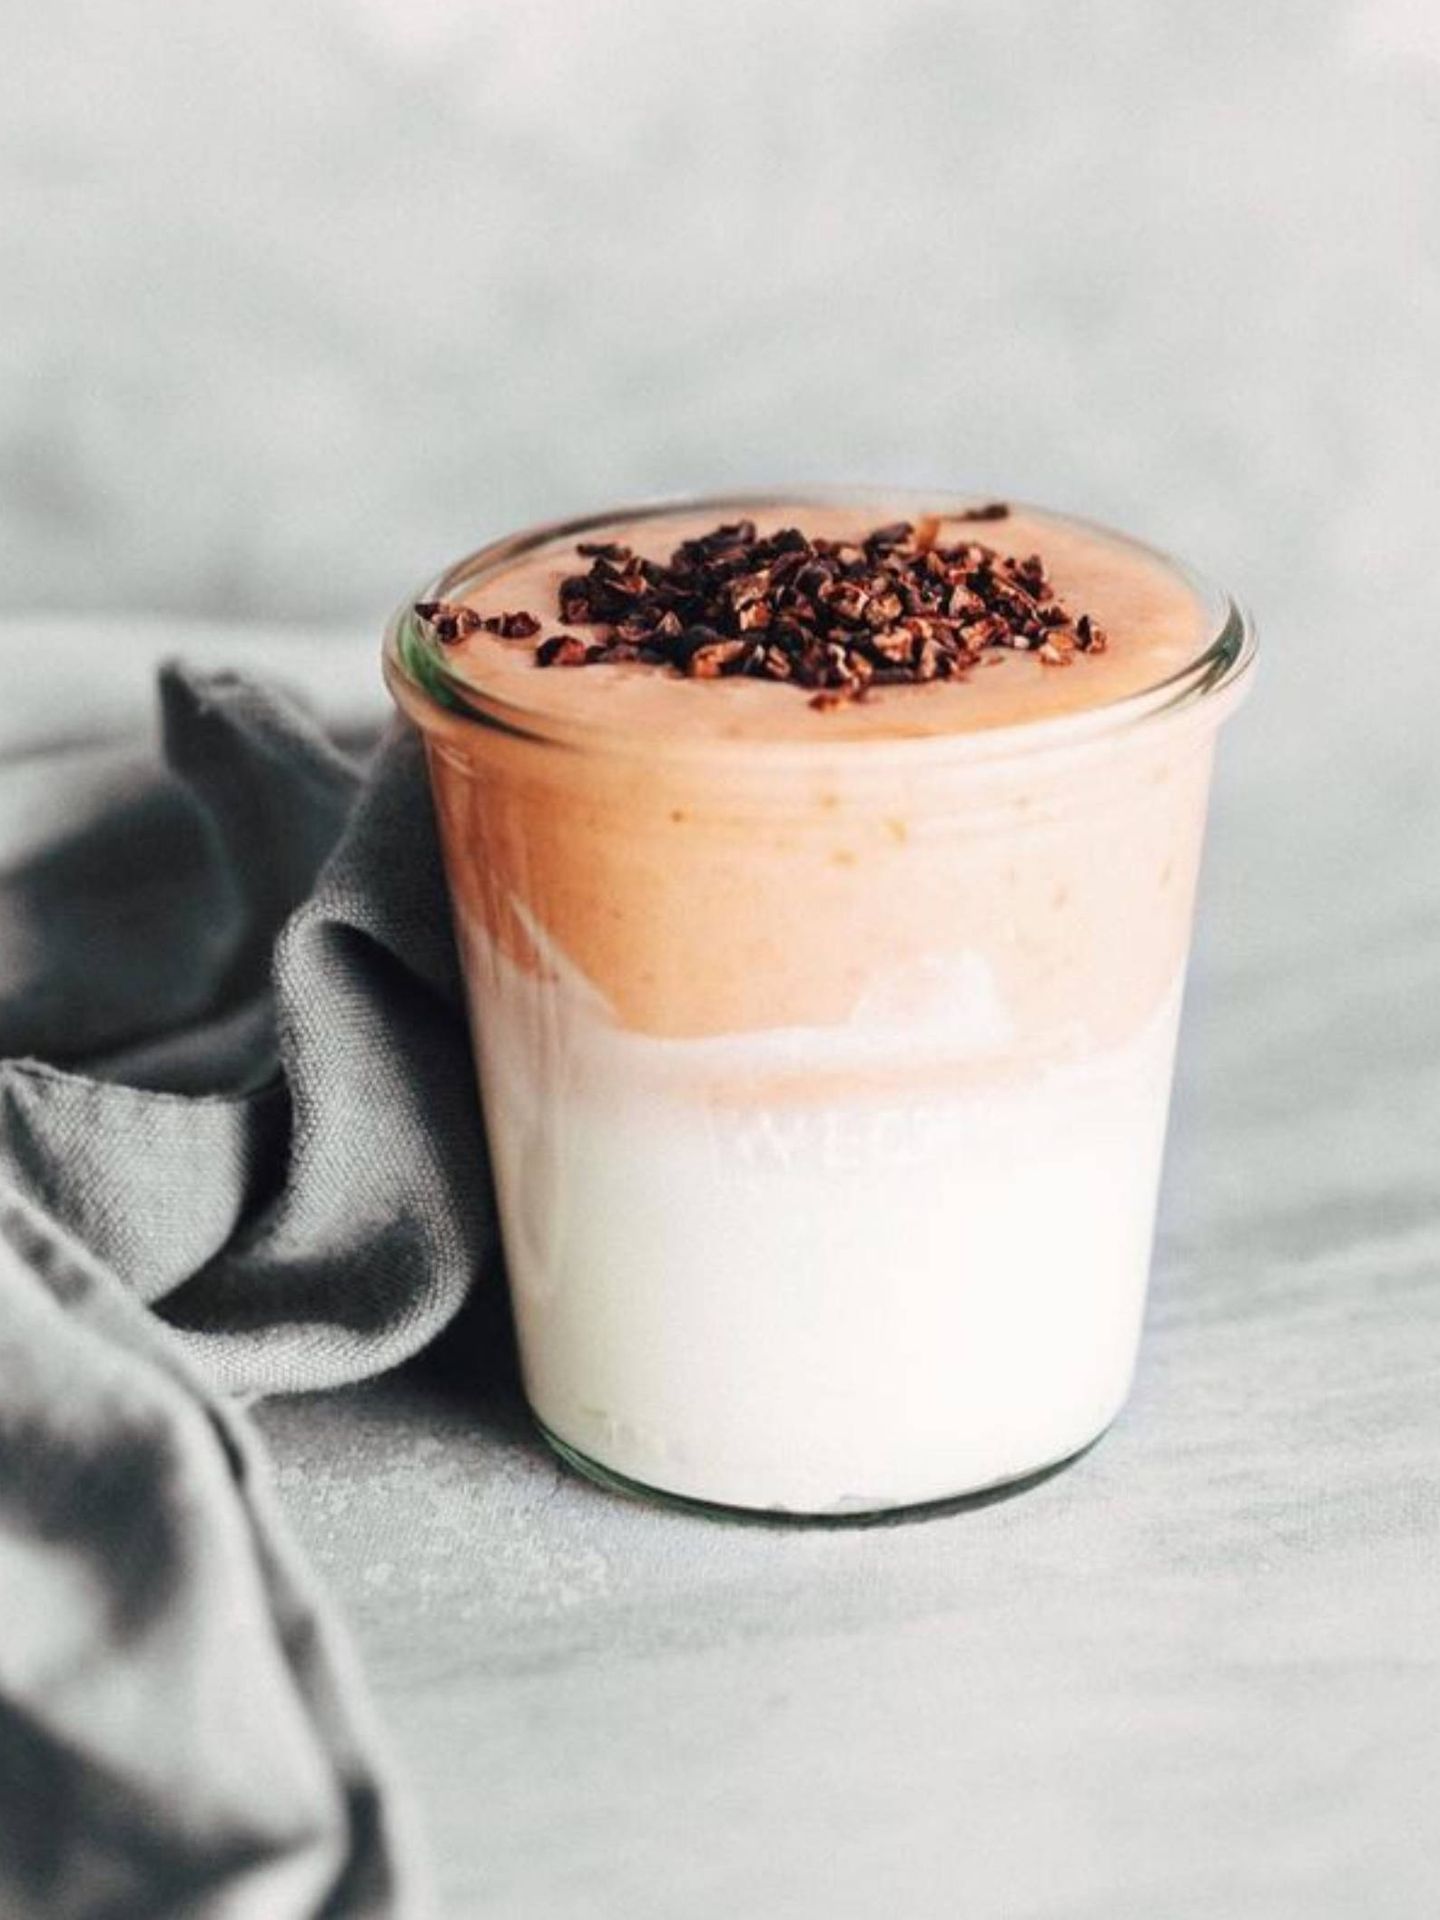 Desayunos fáciles y sencillos para adelgazar sin dieta. (Instagram @ayearofbreakfast)